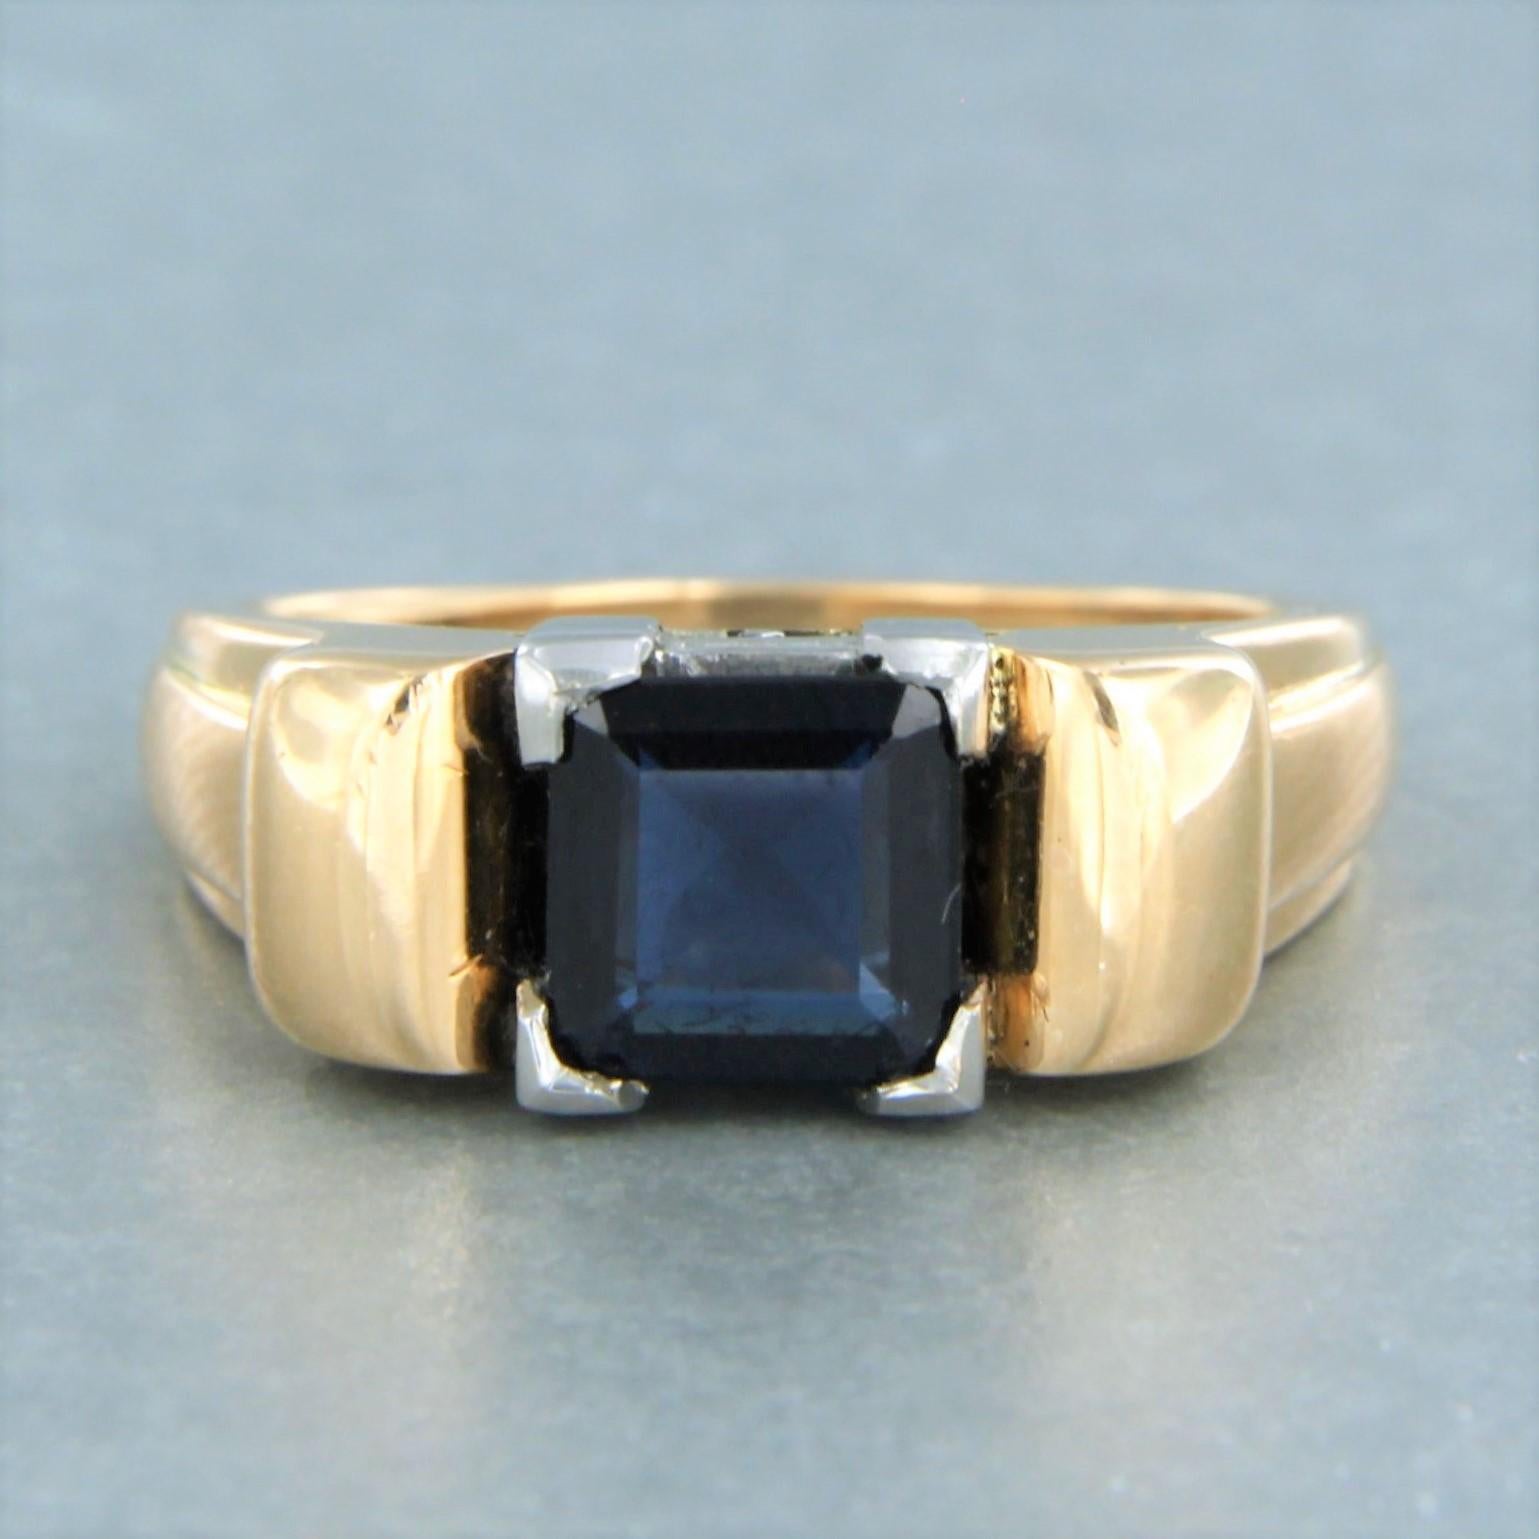 18k Bicolor Gold Ring mit Saphir zu setzen. 1.50ct - Ringgröße U.S. 7.25 - EU. 17.5(55)

detaillierte Beschreibung:

die Oberseite des Rings ist 8,0 mm breit und 6,1 mm hoch

Ringgröße U.S. 7.25 - EU. 17.5(55), der Ring kann zum Selbstkostenpreis um